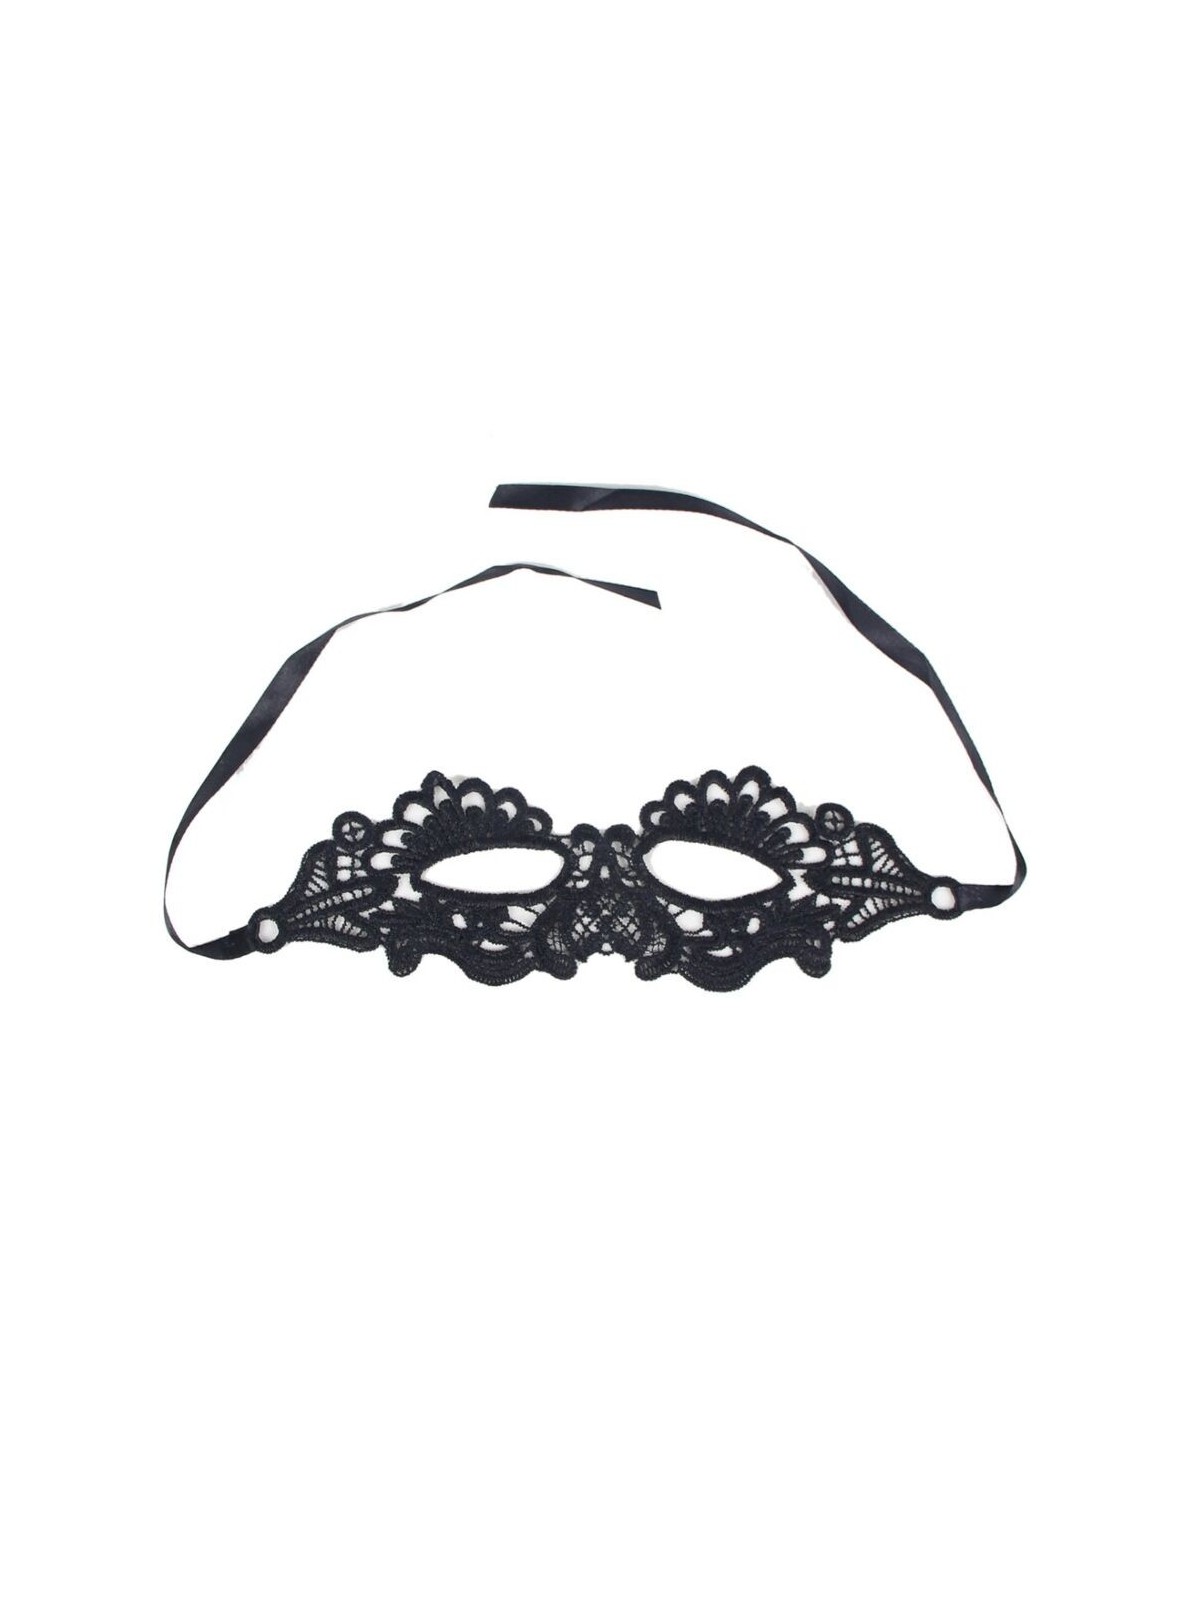 Queen Lingerie Antifaz Negro Talla Única - Comprar Máscara erótica Queen - Máscaras eróticas (1)